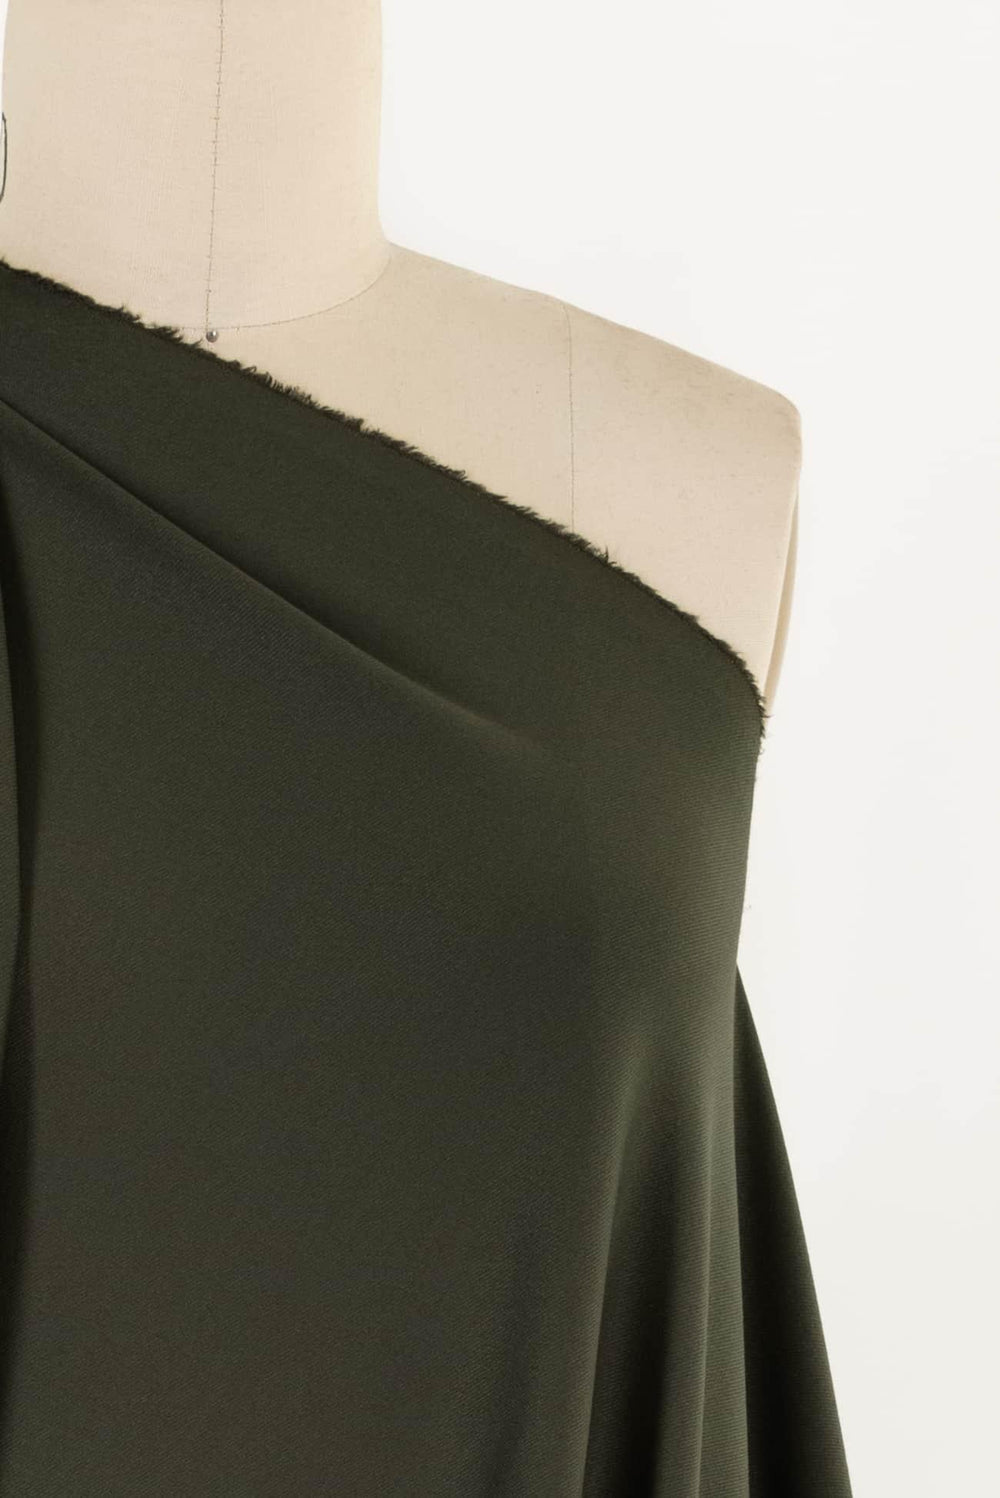 Design Jacket & Coat Fashion Fabrics – Page 5 – Marcy Tilton Fabrics